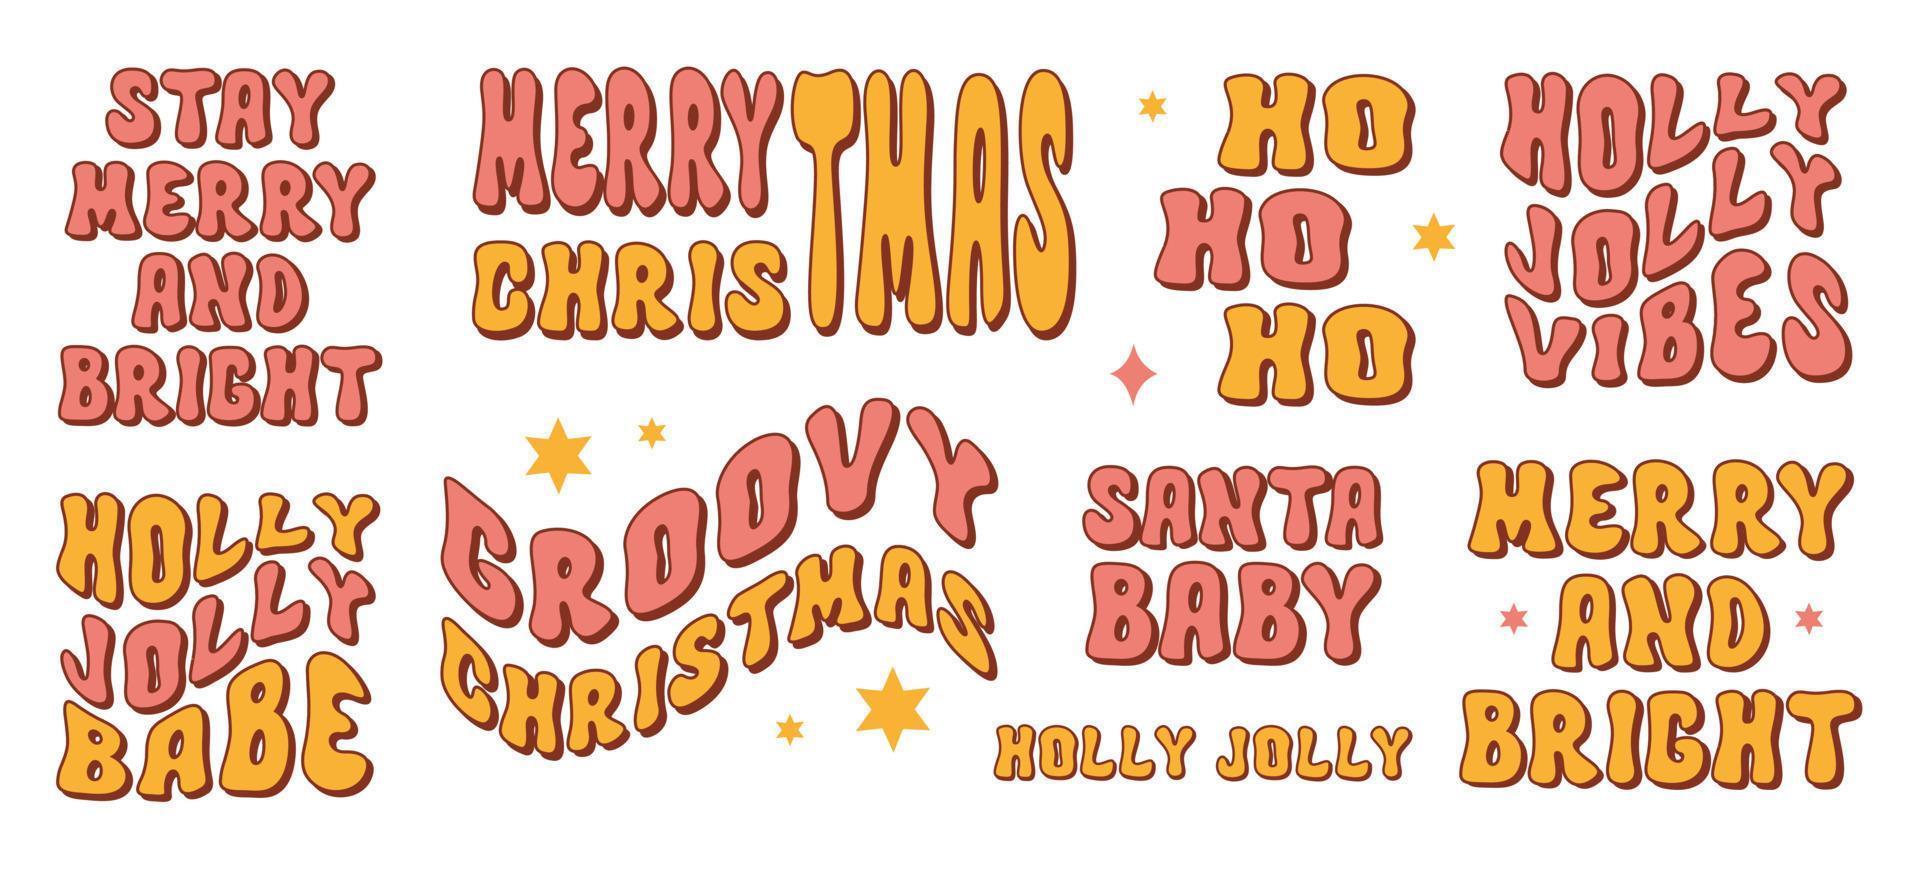 Retro-groovy Weihnachtssatz festliche Phrasen und Slogans isoliert auf weißem Hintergrund. Santa Baby, Holly Jolly Vibes, ho ho ho, fröhlich und hell. vektorillustration im stil der 60er, 70er jahre vektor